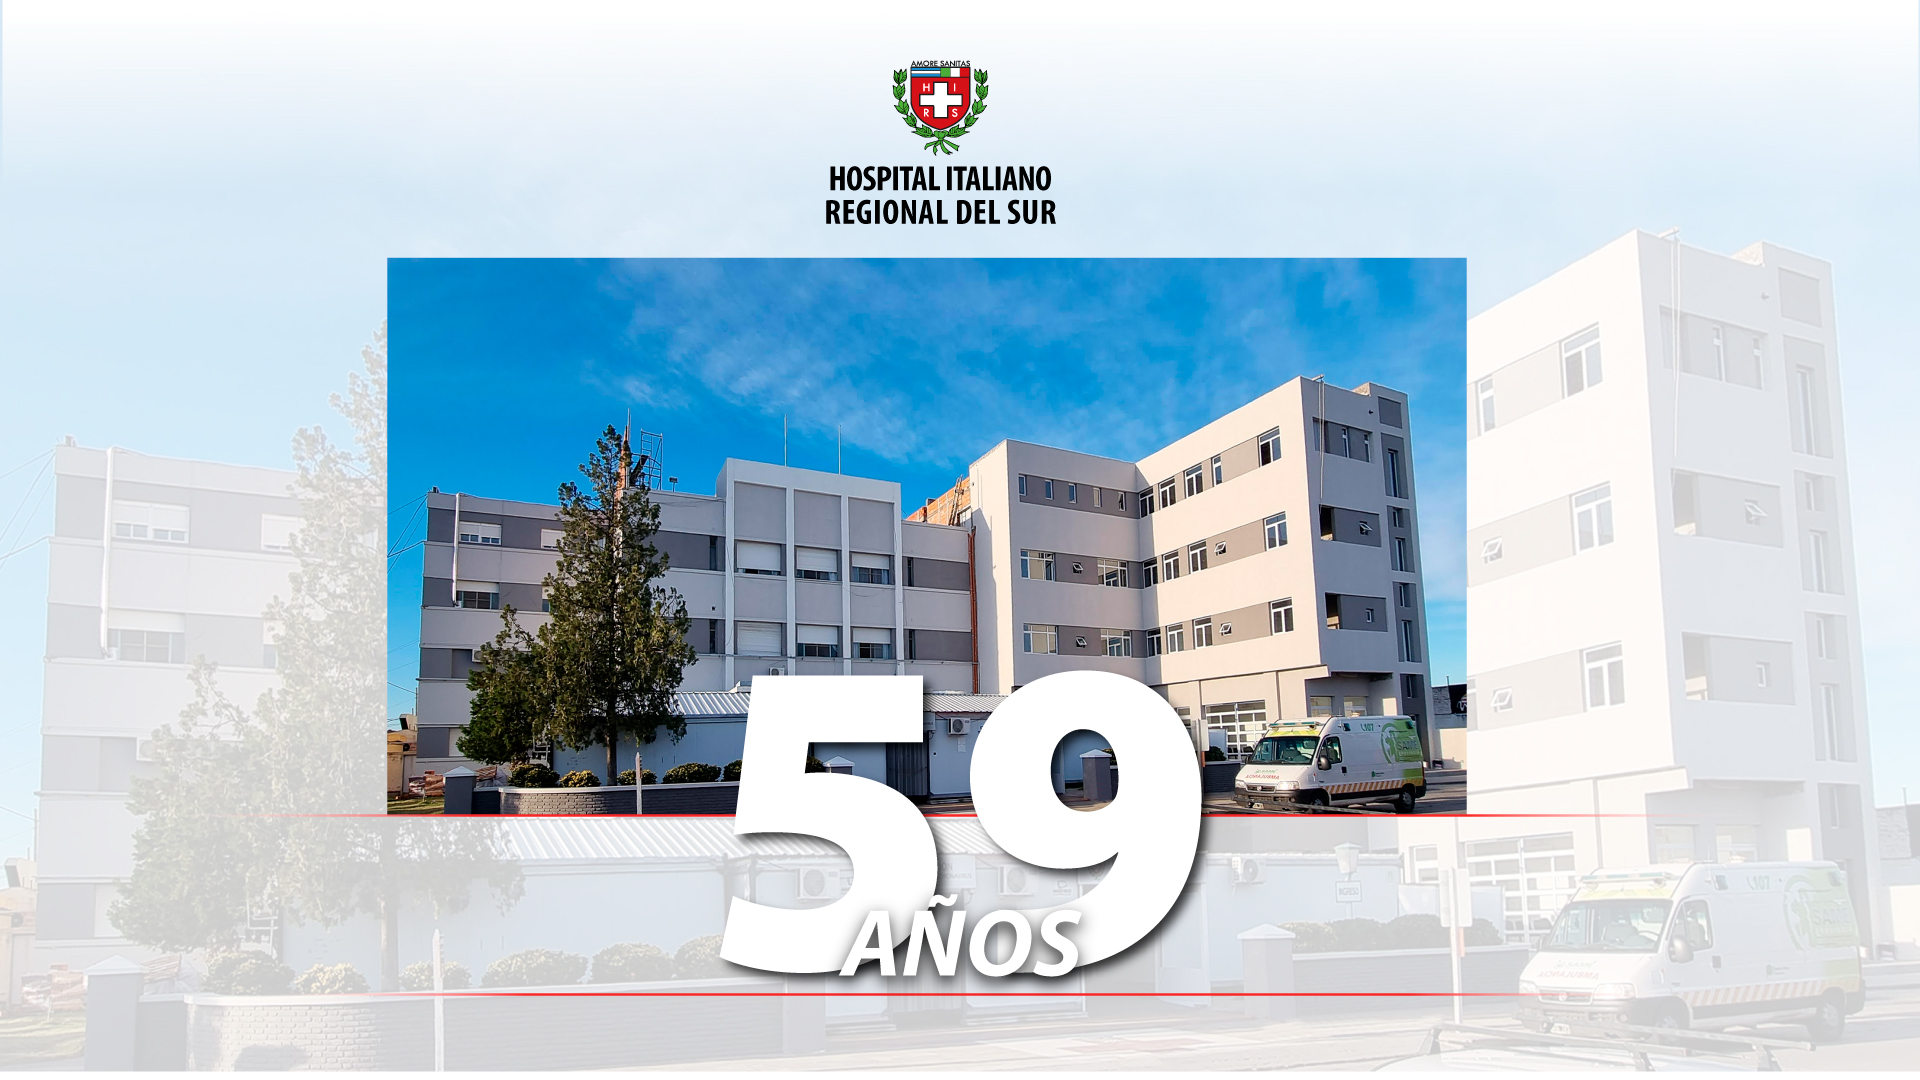 Aniversario 2022 - Hospital Italiano Regional del Sur